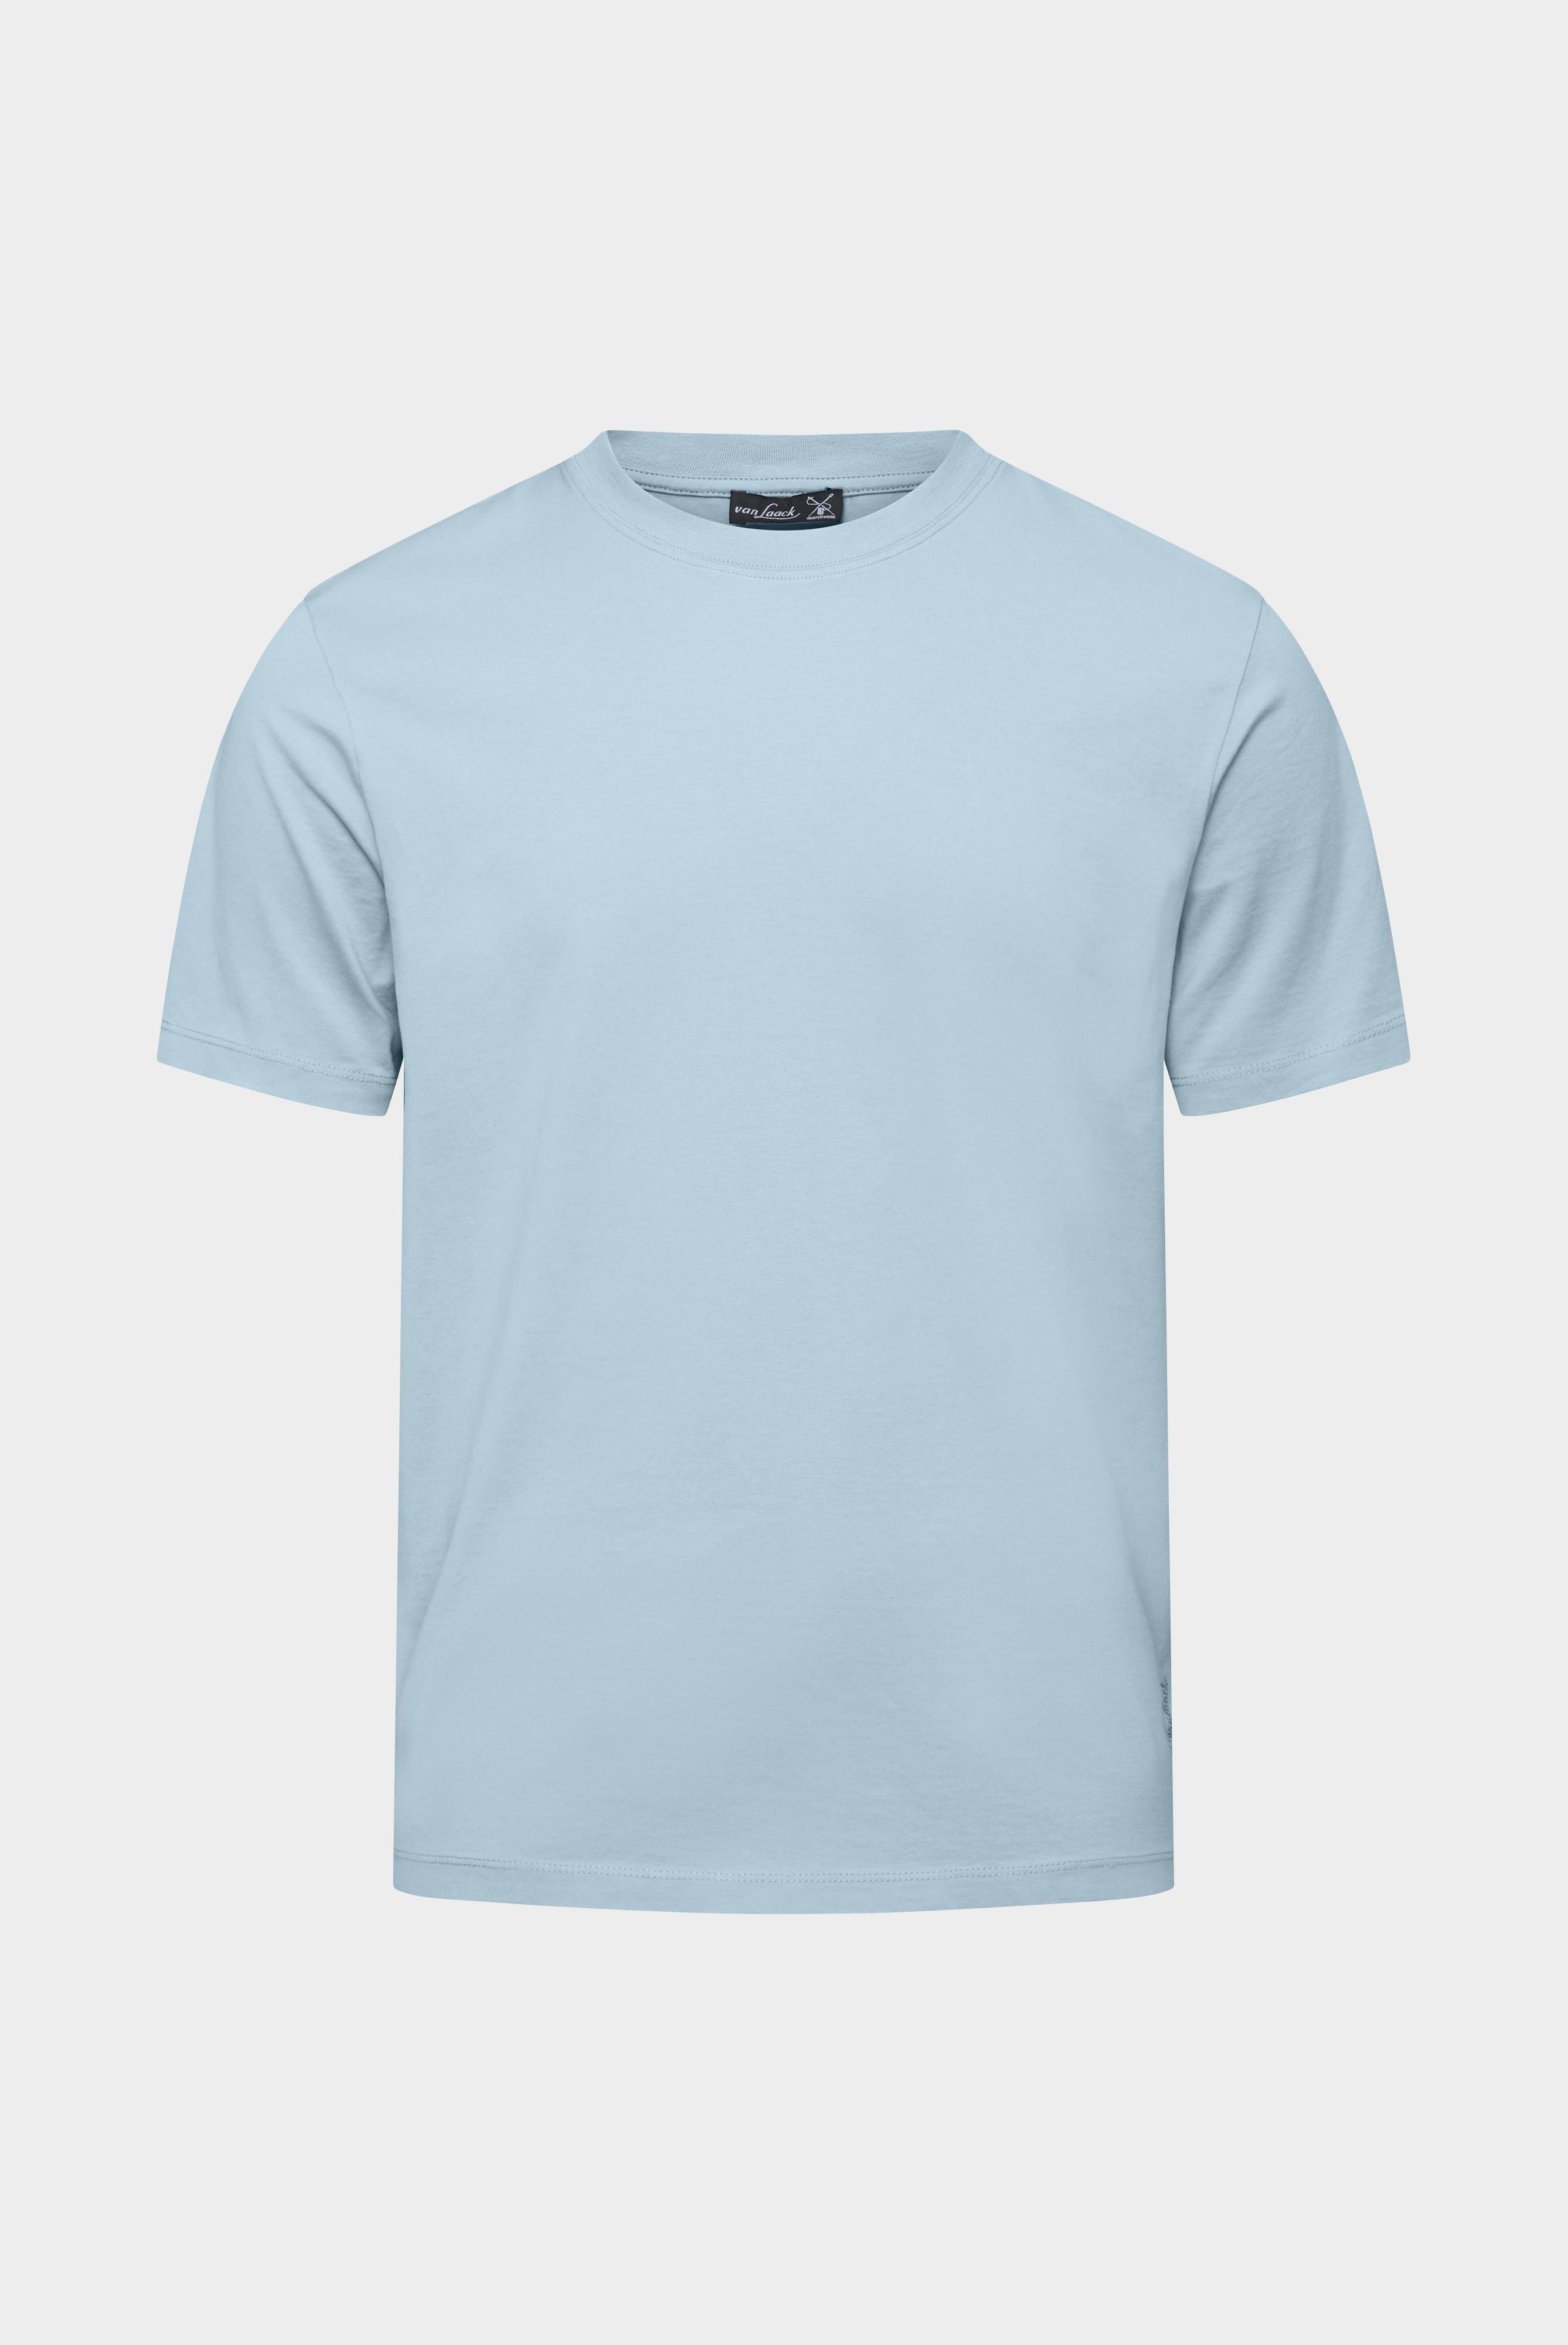 T-Shirts+T-Shirt aus langstapeliger Baumwolle+20.1660..Z20044.720.XXL